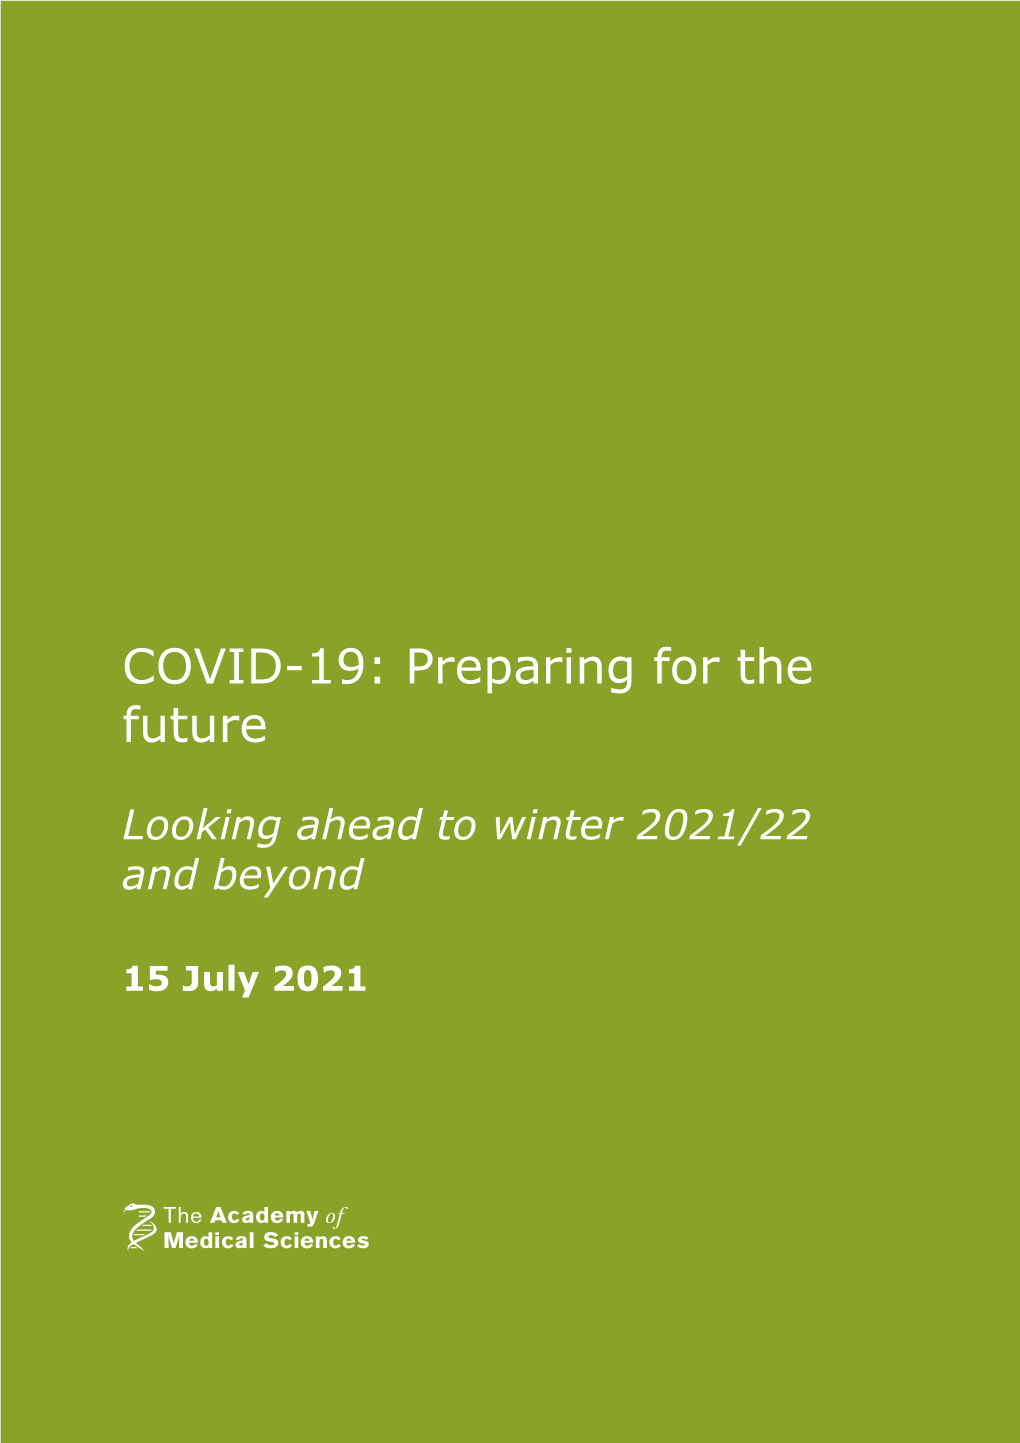 COVID-19: Preparing for the Future